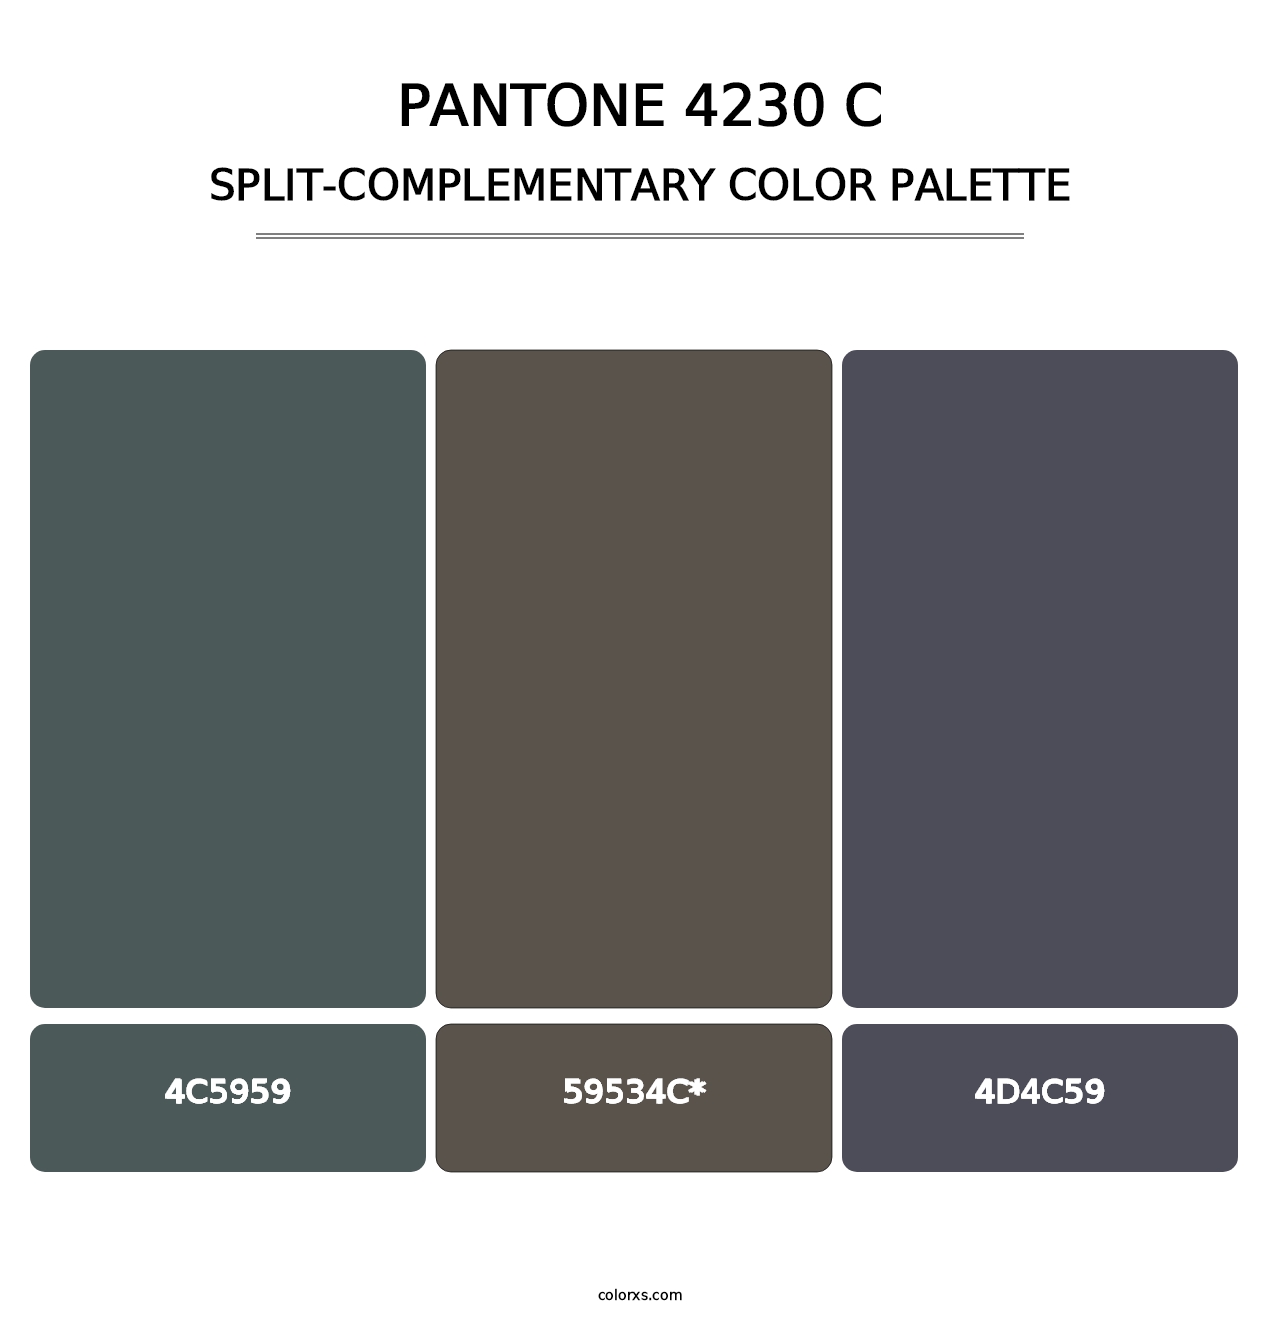 PANTONE 4230 C - Split-Complementary Color Palette